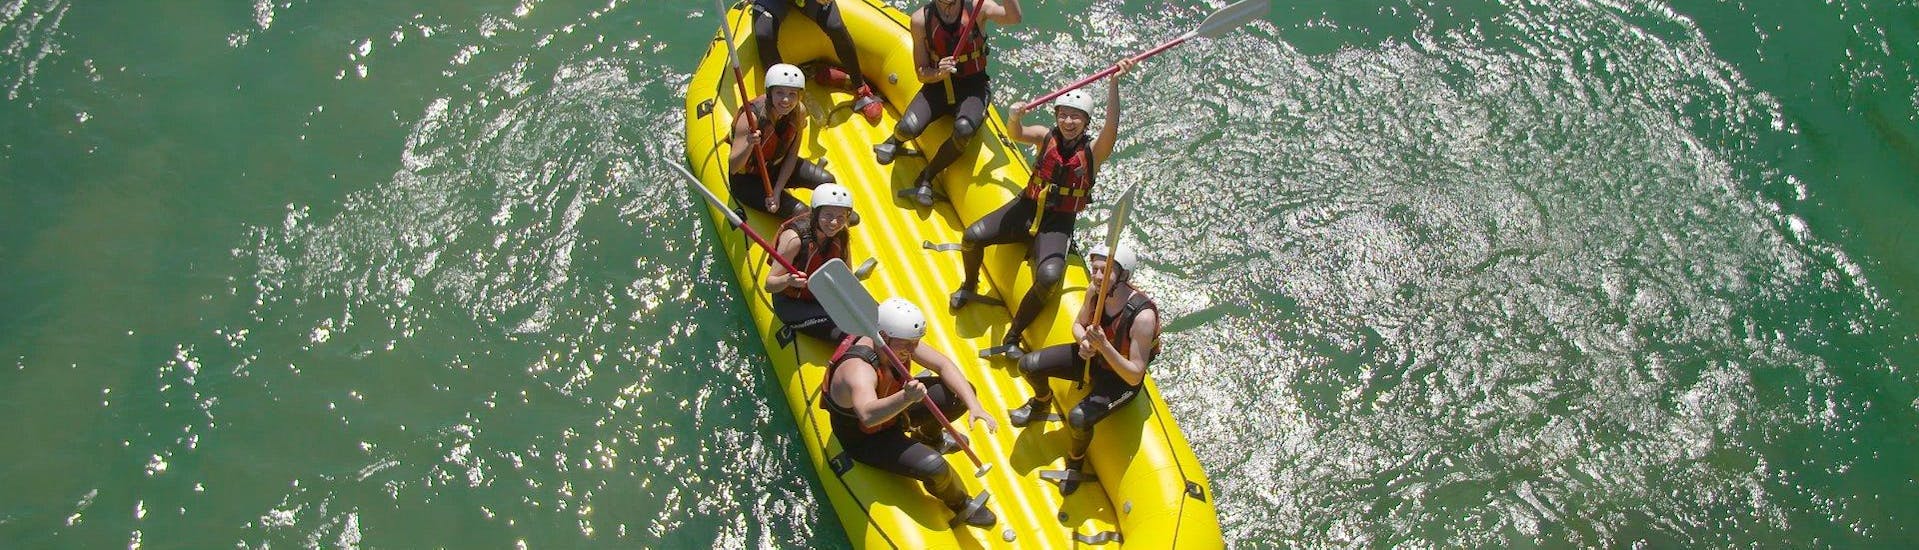 Avontuurlijke dag met Rafting & Canyoning in Bled.